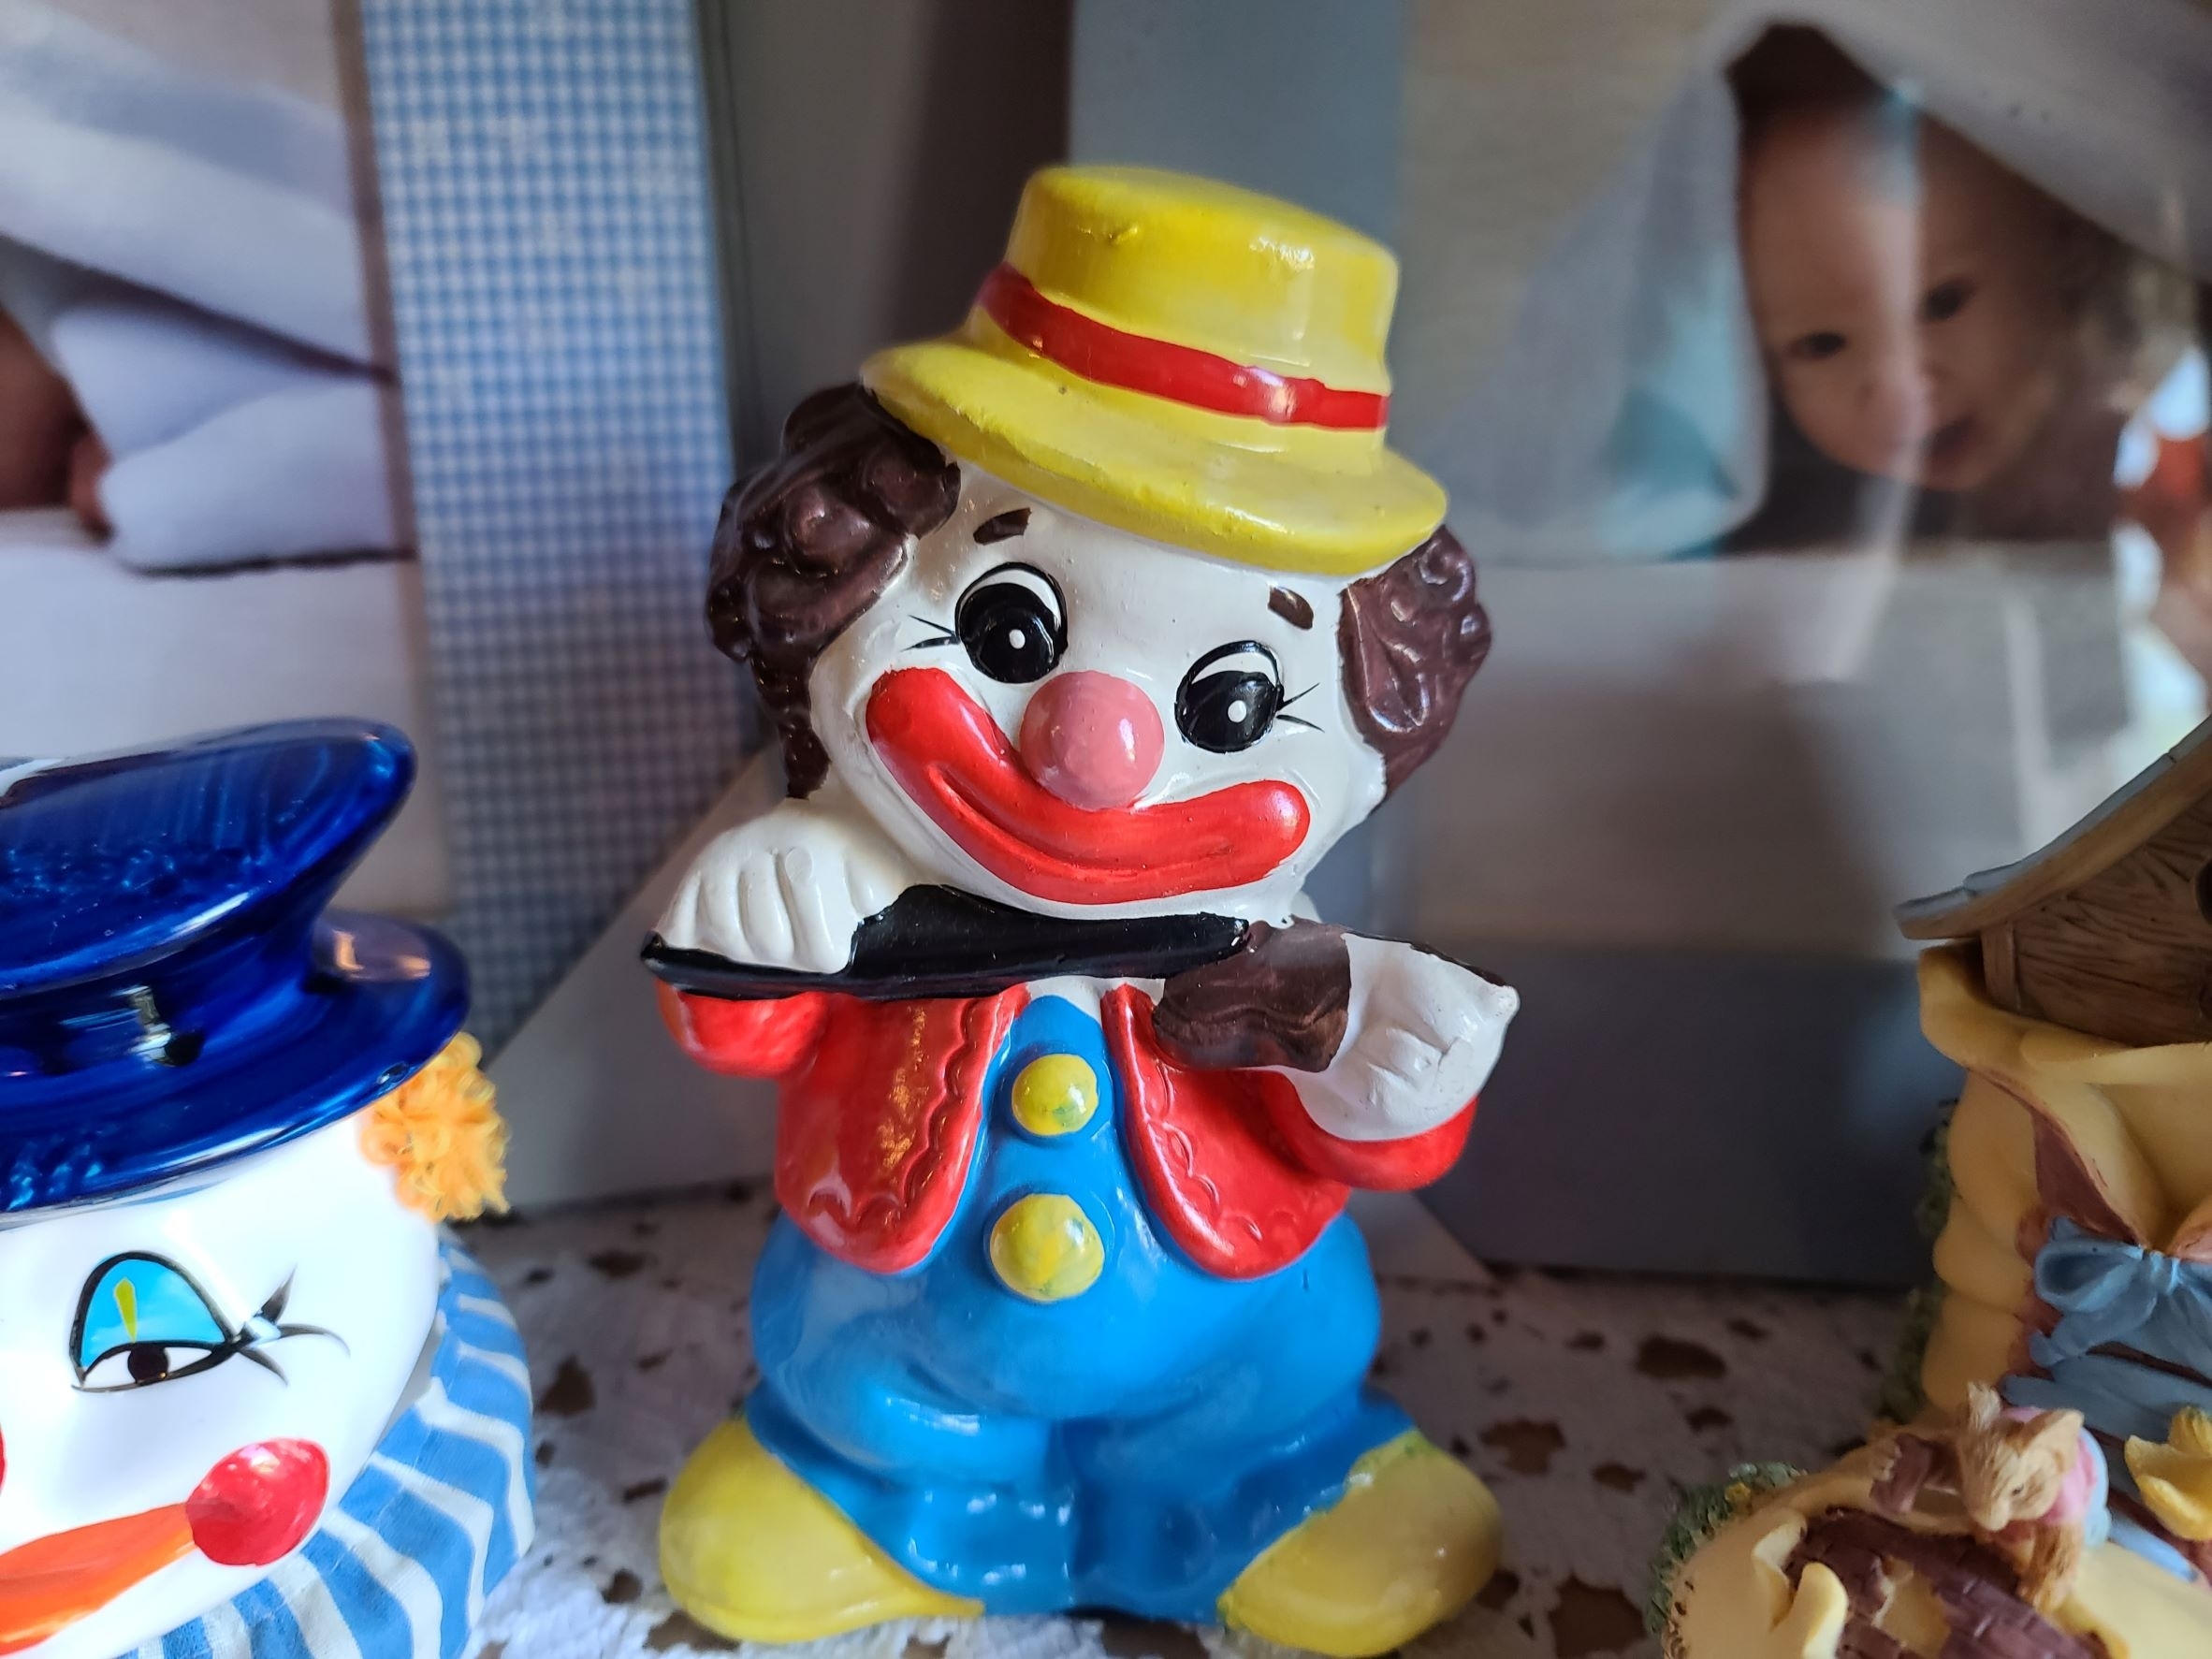 Eine Clownsfigur | Quelle: Shutterstock